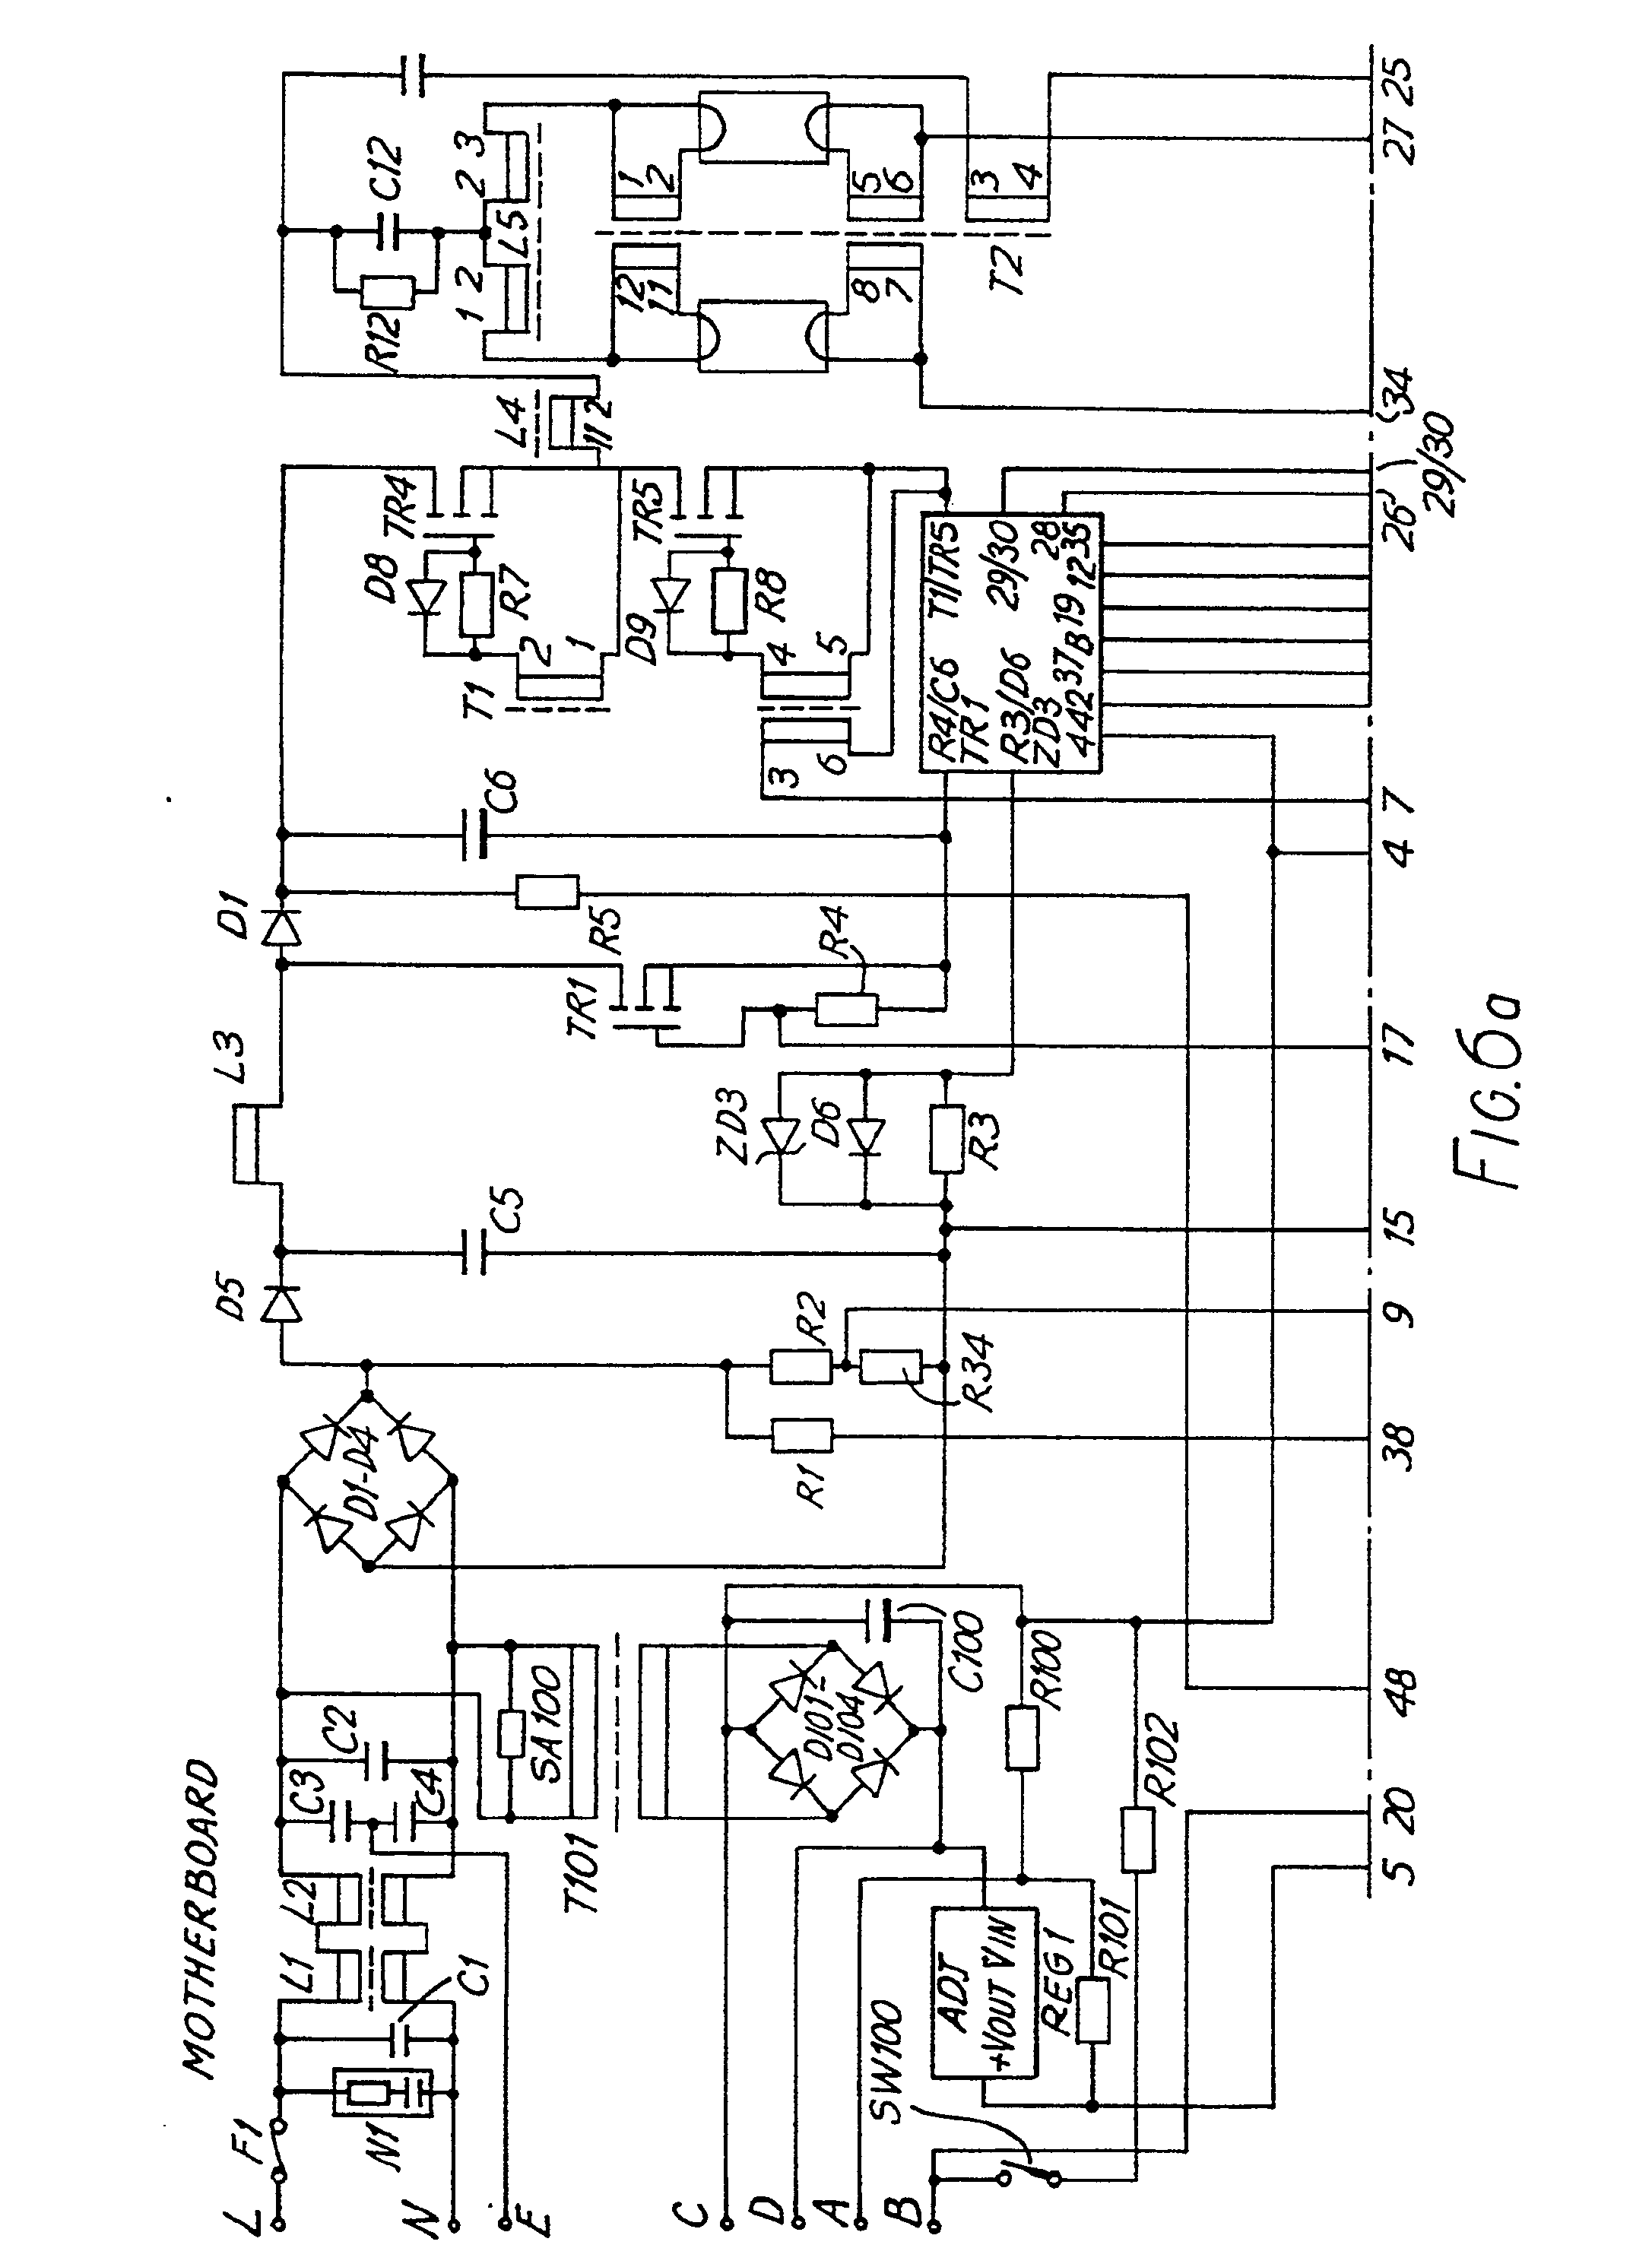 yun ba first era wiring diagram